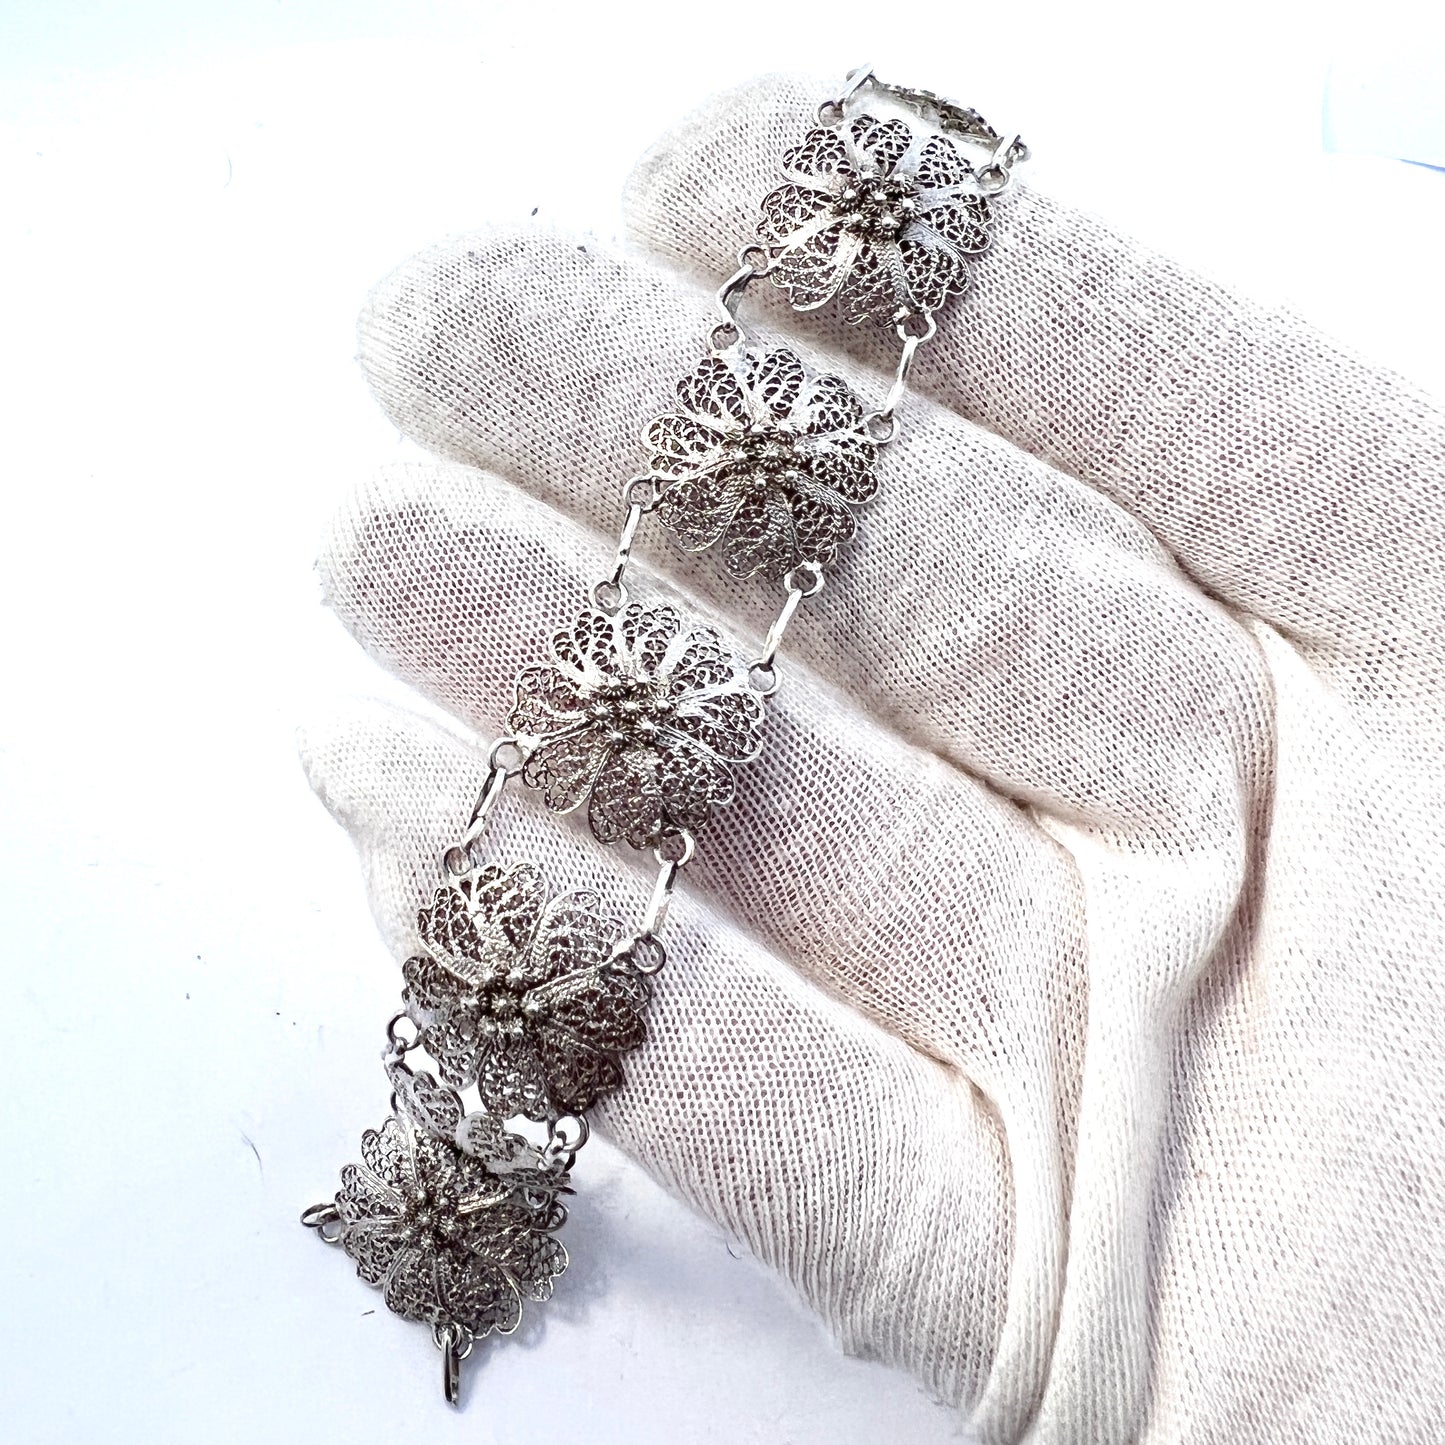 Sweden 1930-40s. Solid Silver Filigree Bracelet.